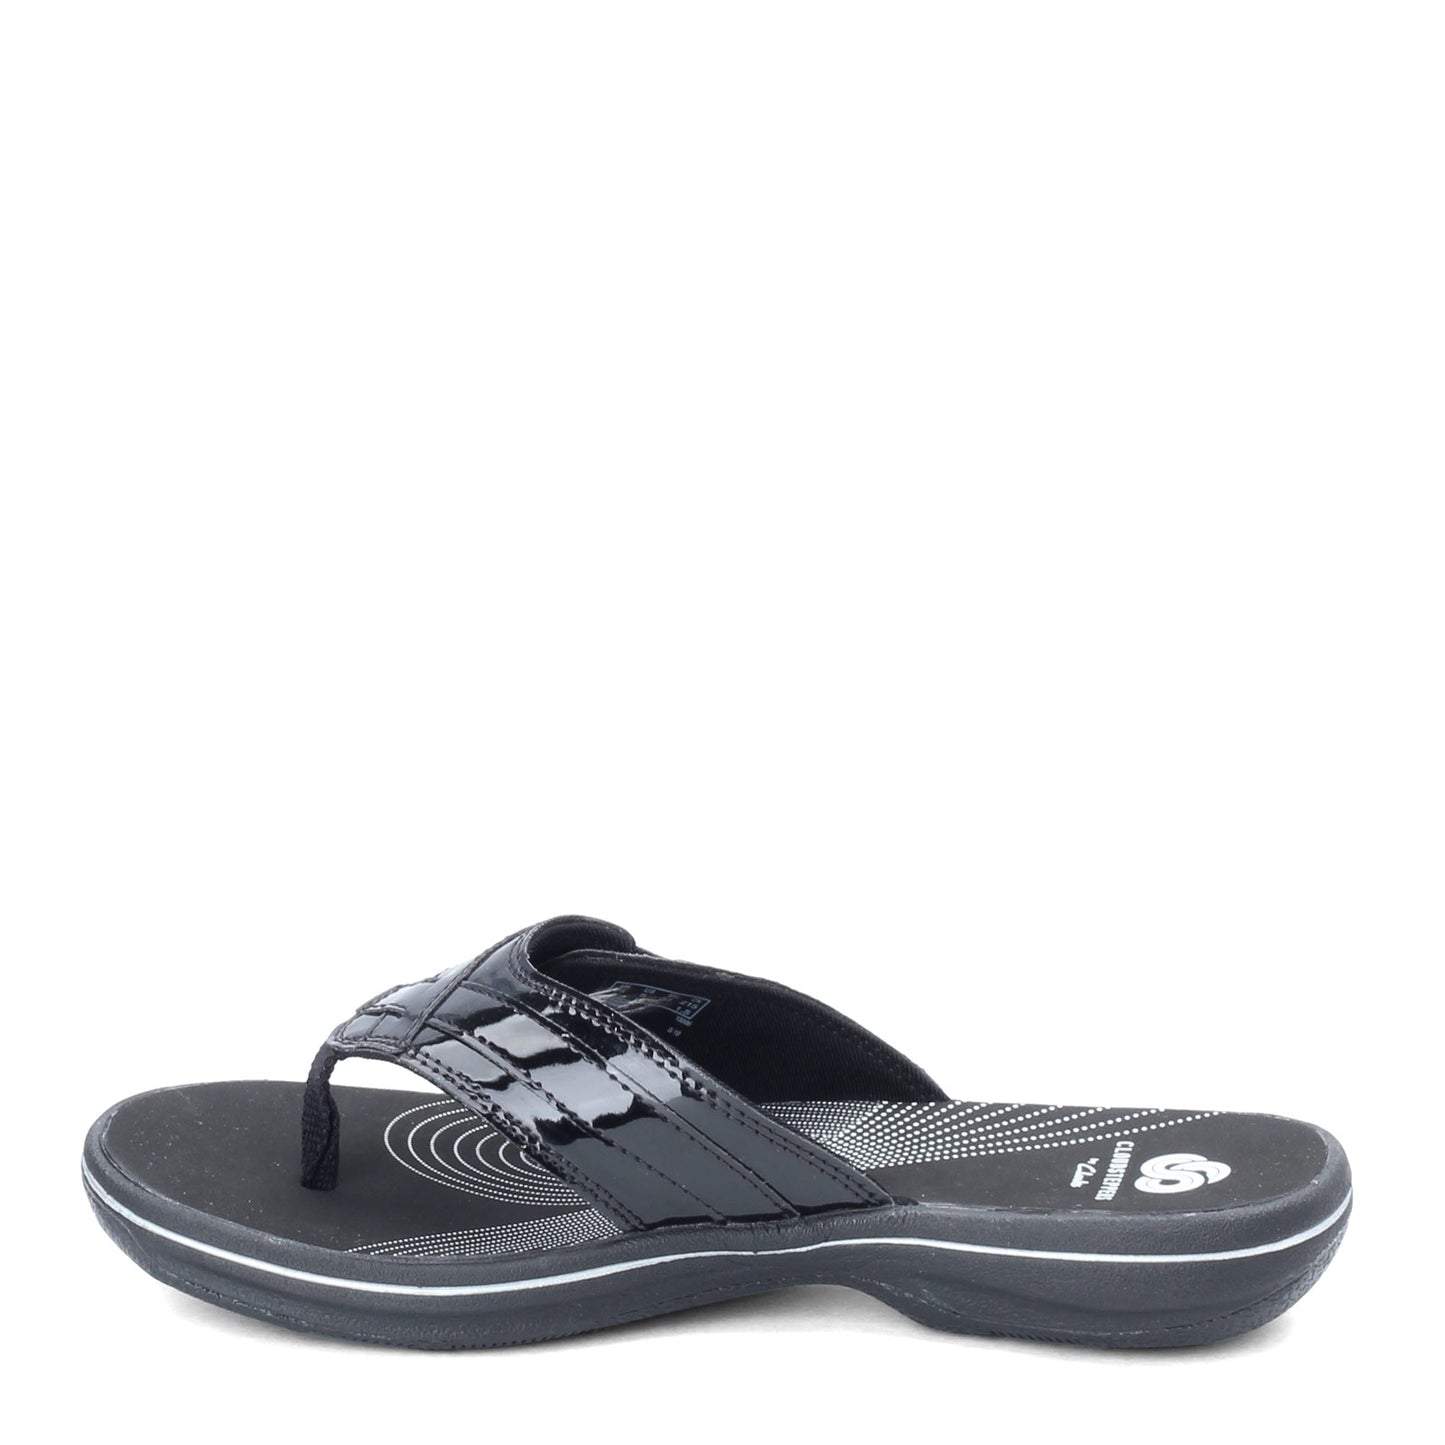 Peltz Shoes  Women's Clarks Breeze Sea Sandal BLACK PATENT 26133671